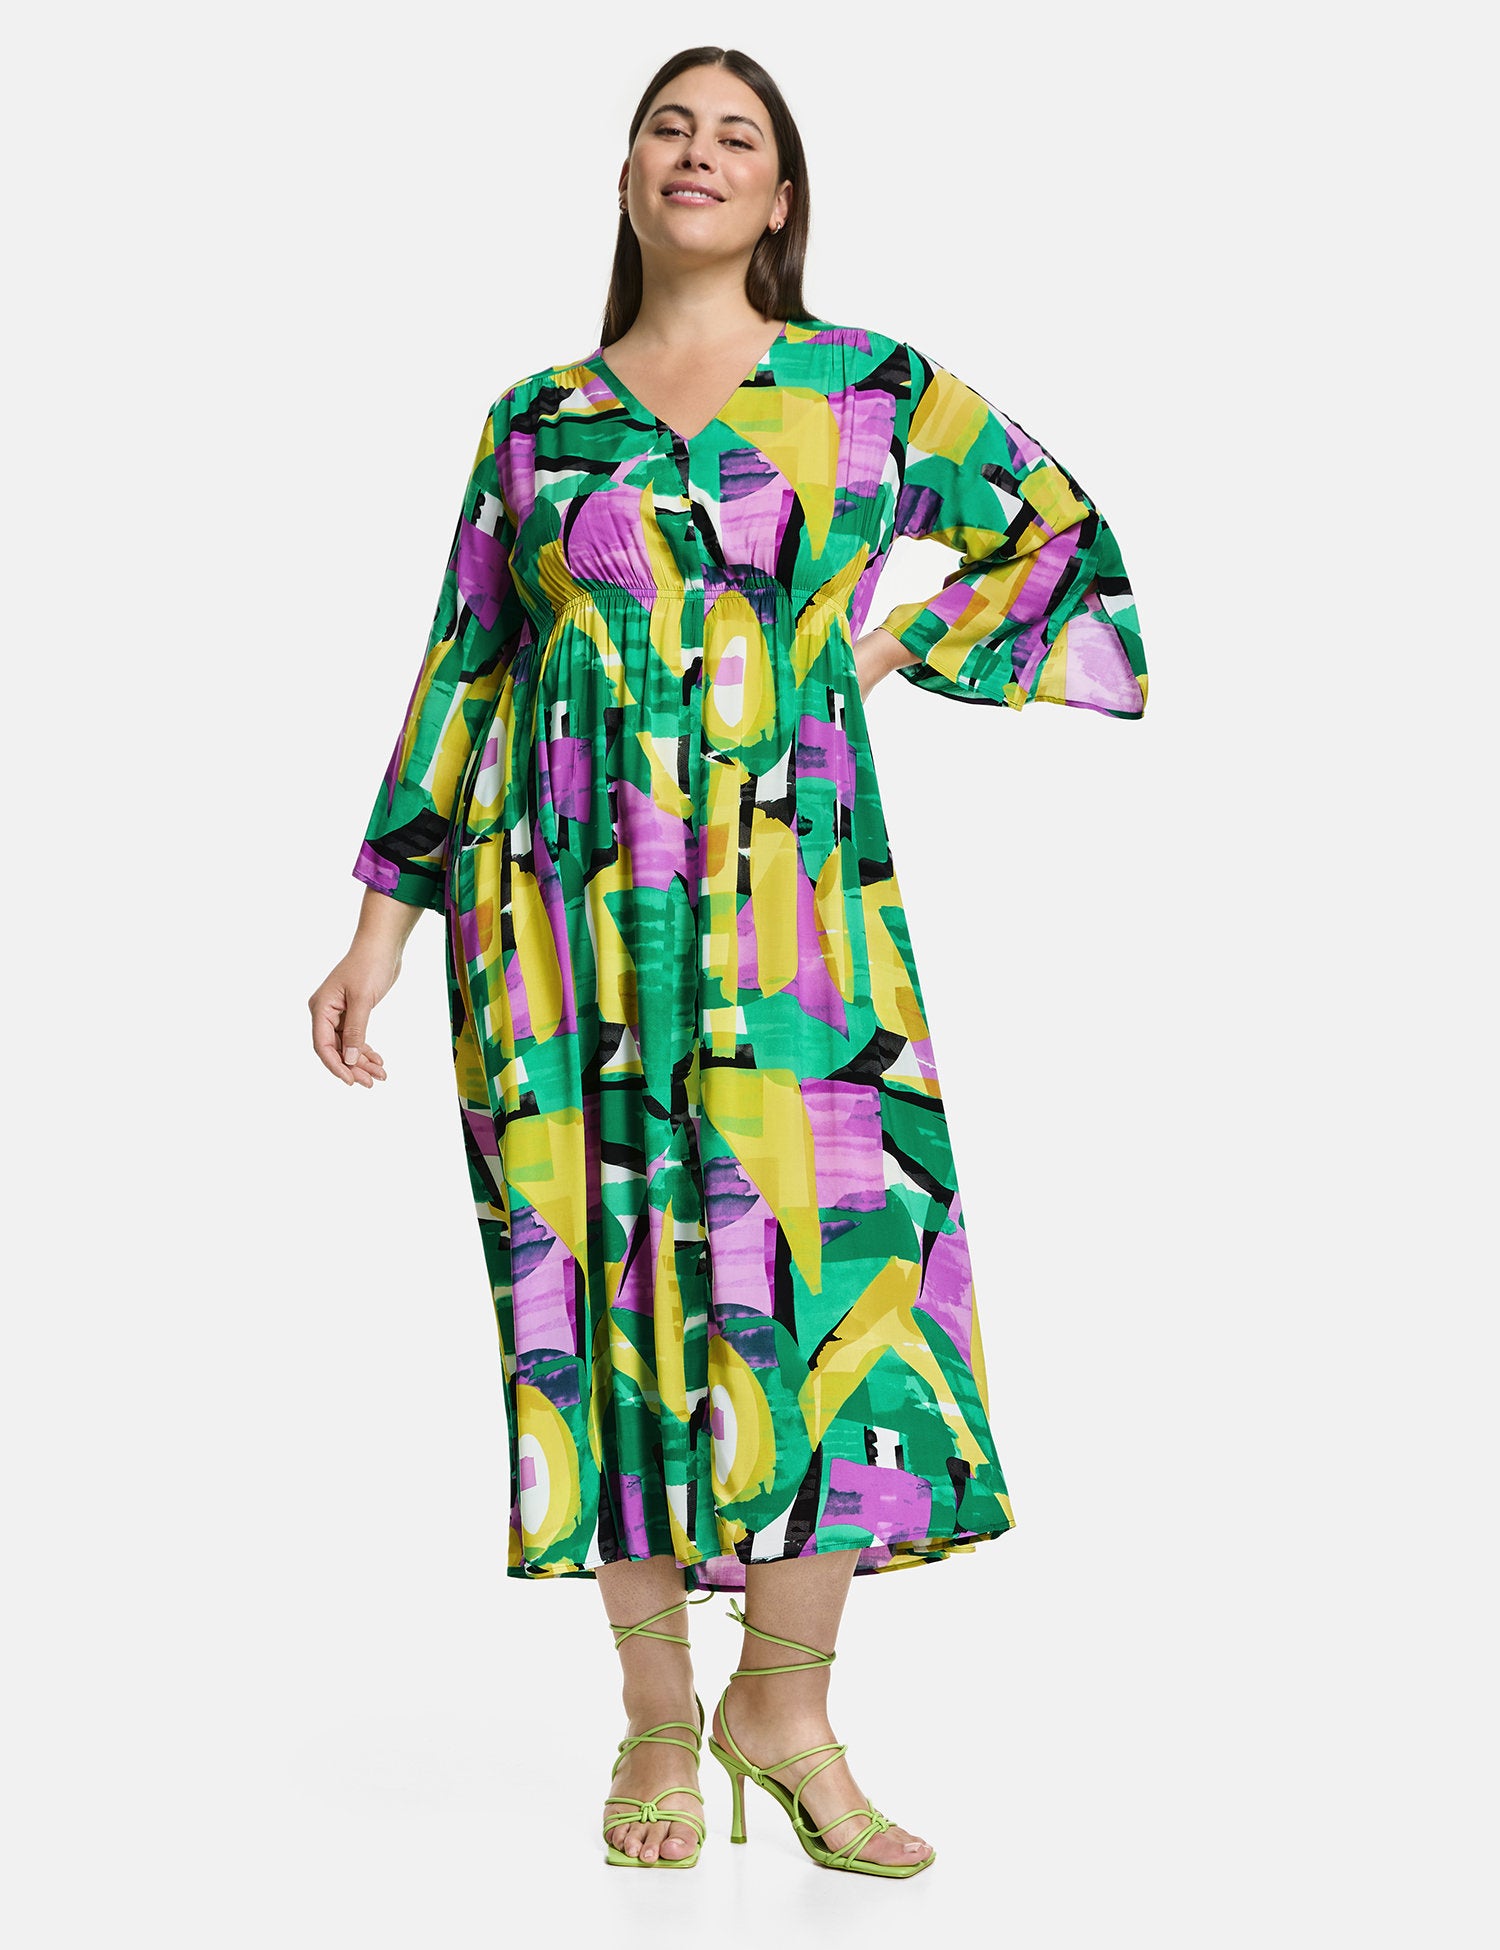 Boho Dress With A Colourful Print_480024-21064_5602_03